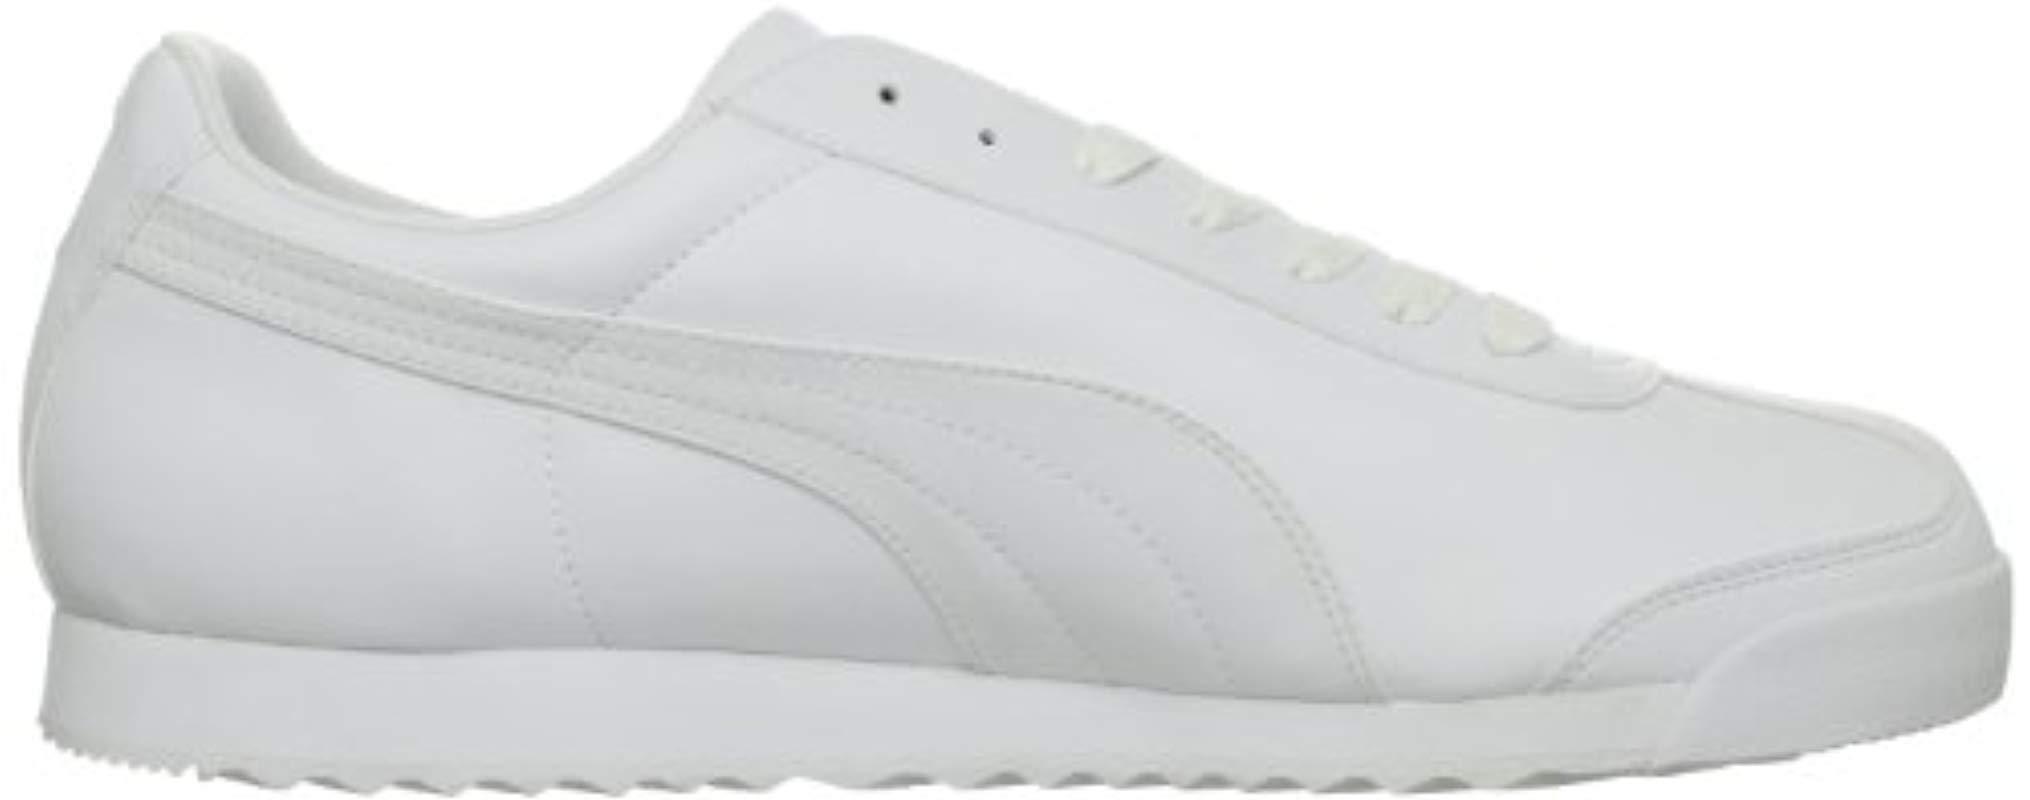 Lyst - Puma Roma Basic Sneaker in White for Men